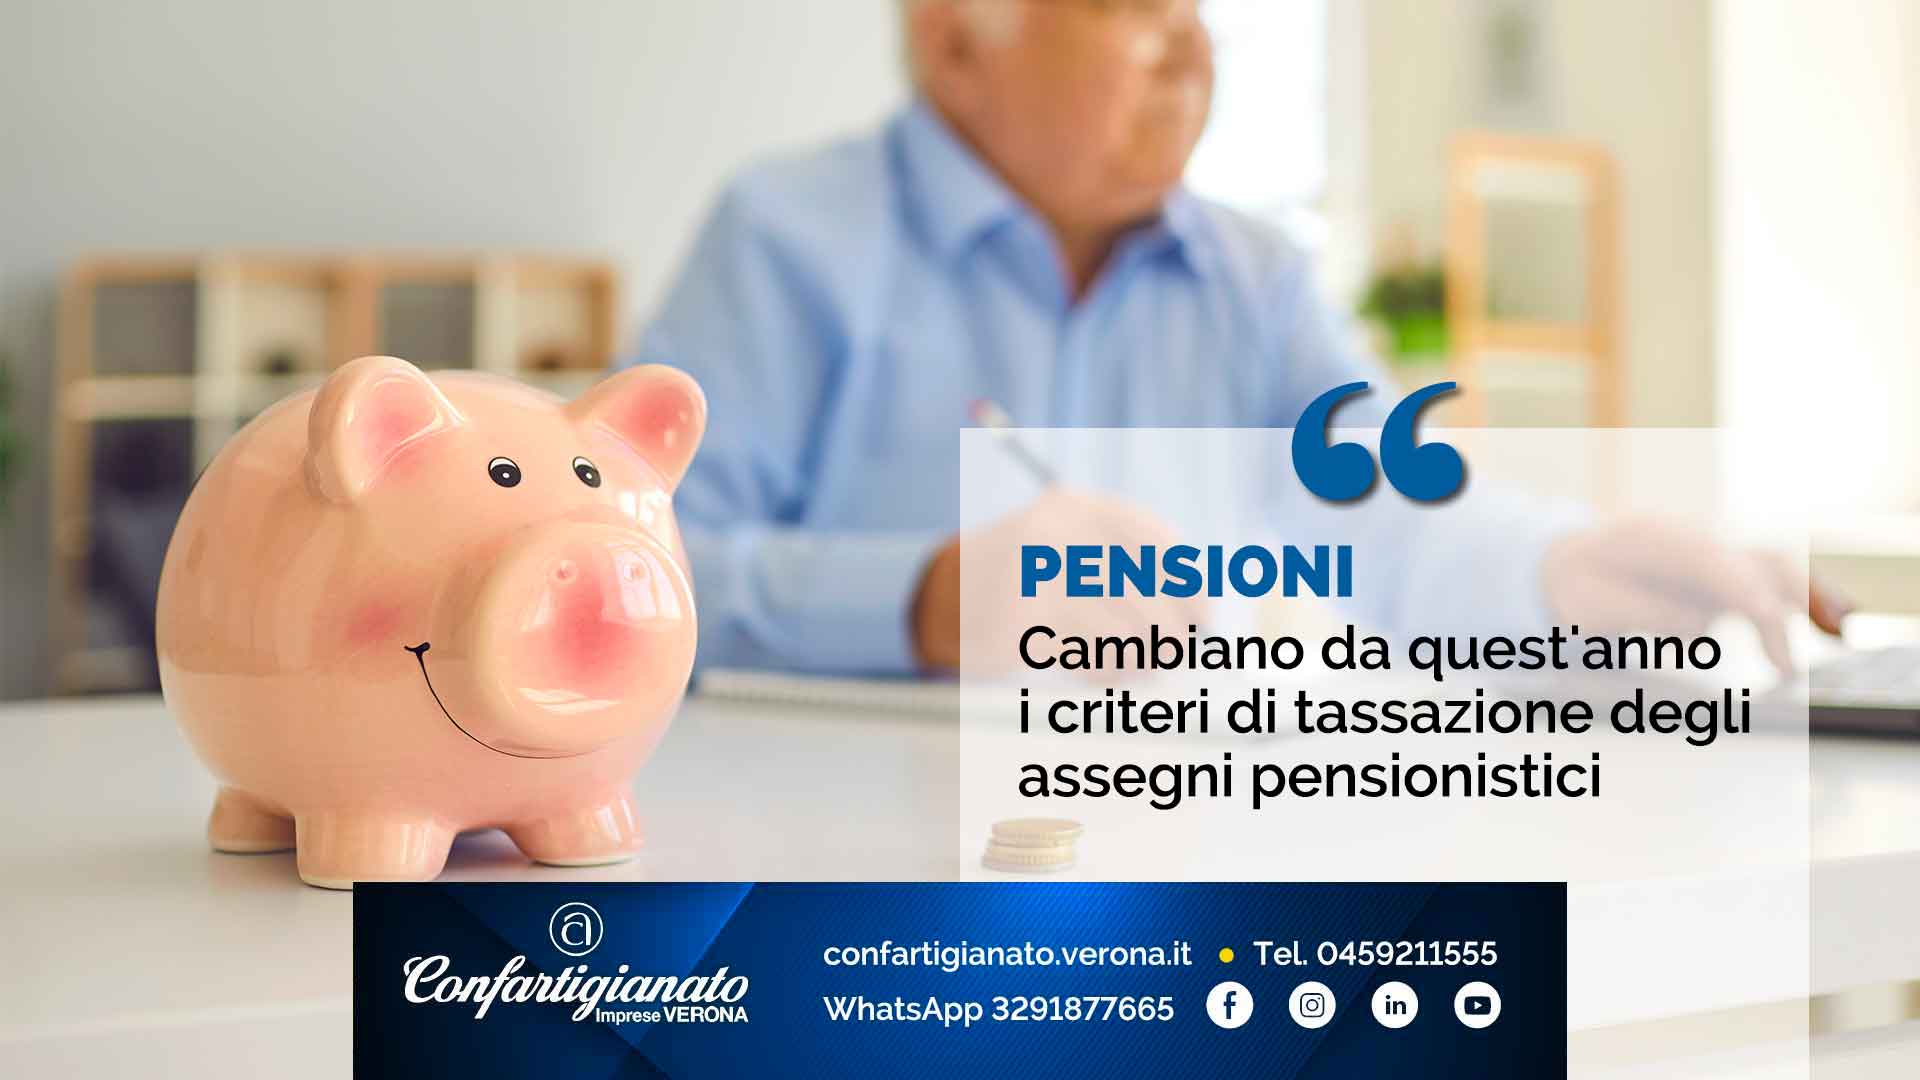 PENSIONI – Cambiano da quest'anno i criteri di tassazione degli assegni pensionistici